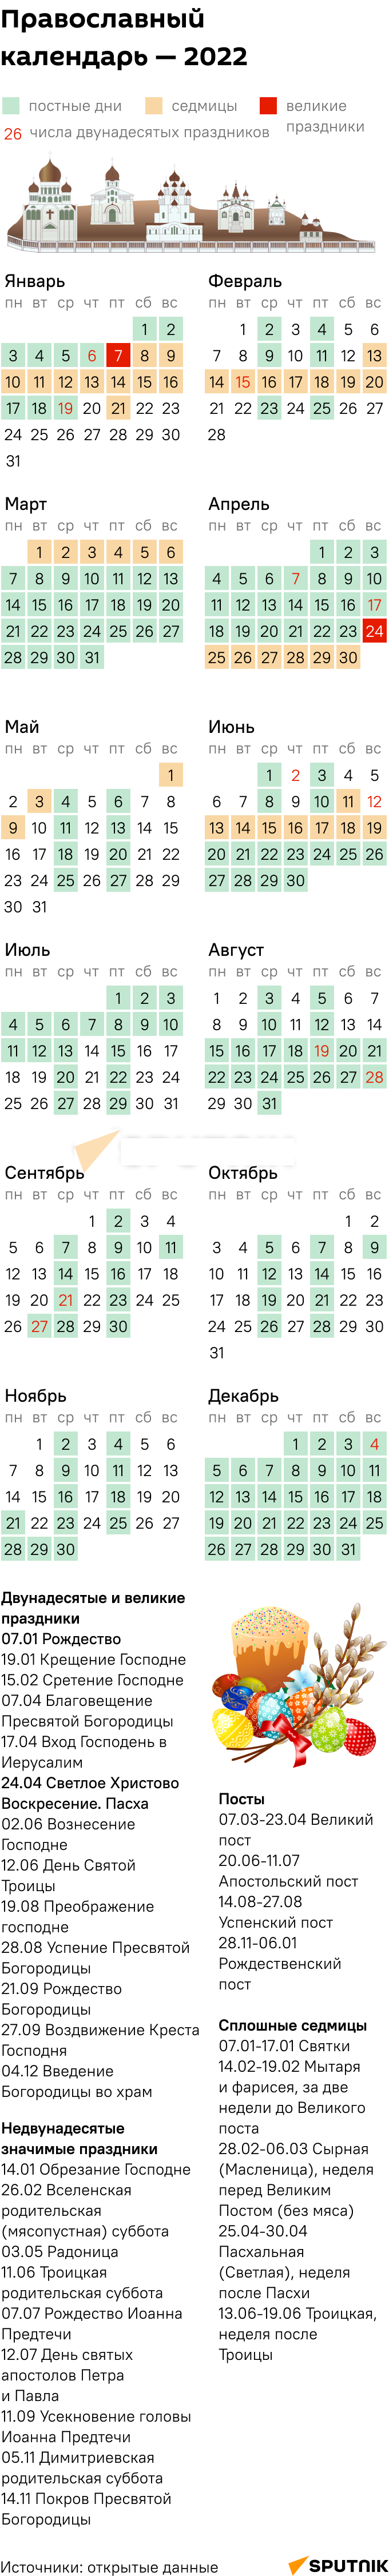 Православный календарь 2022  - Sputnik Таджикистан